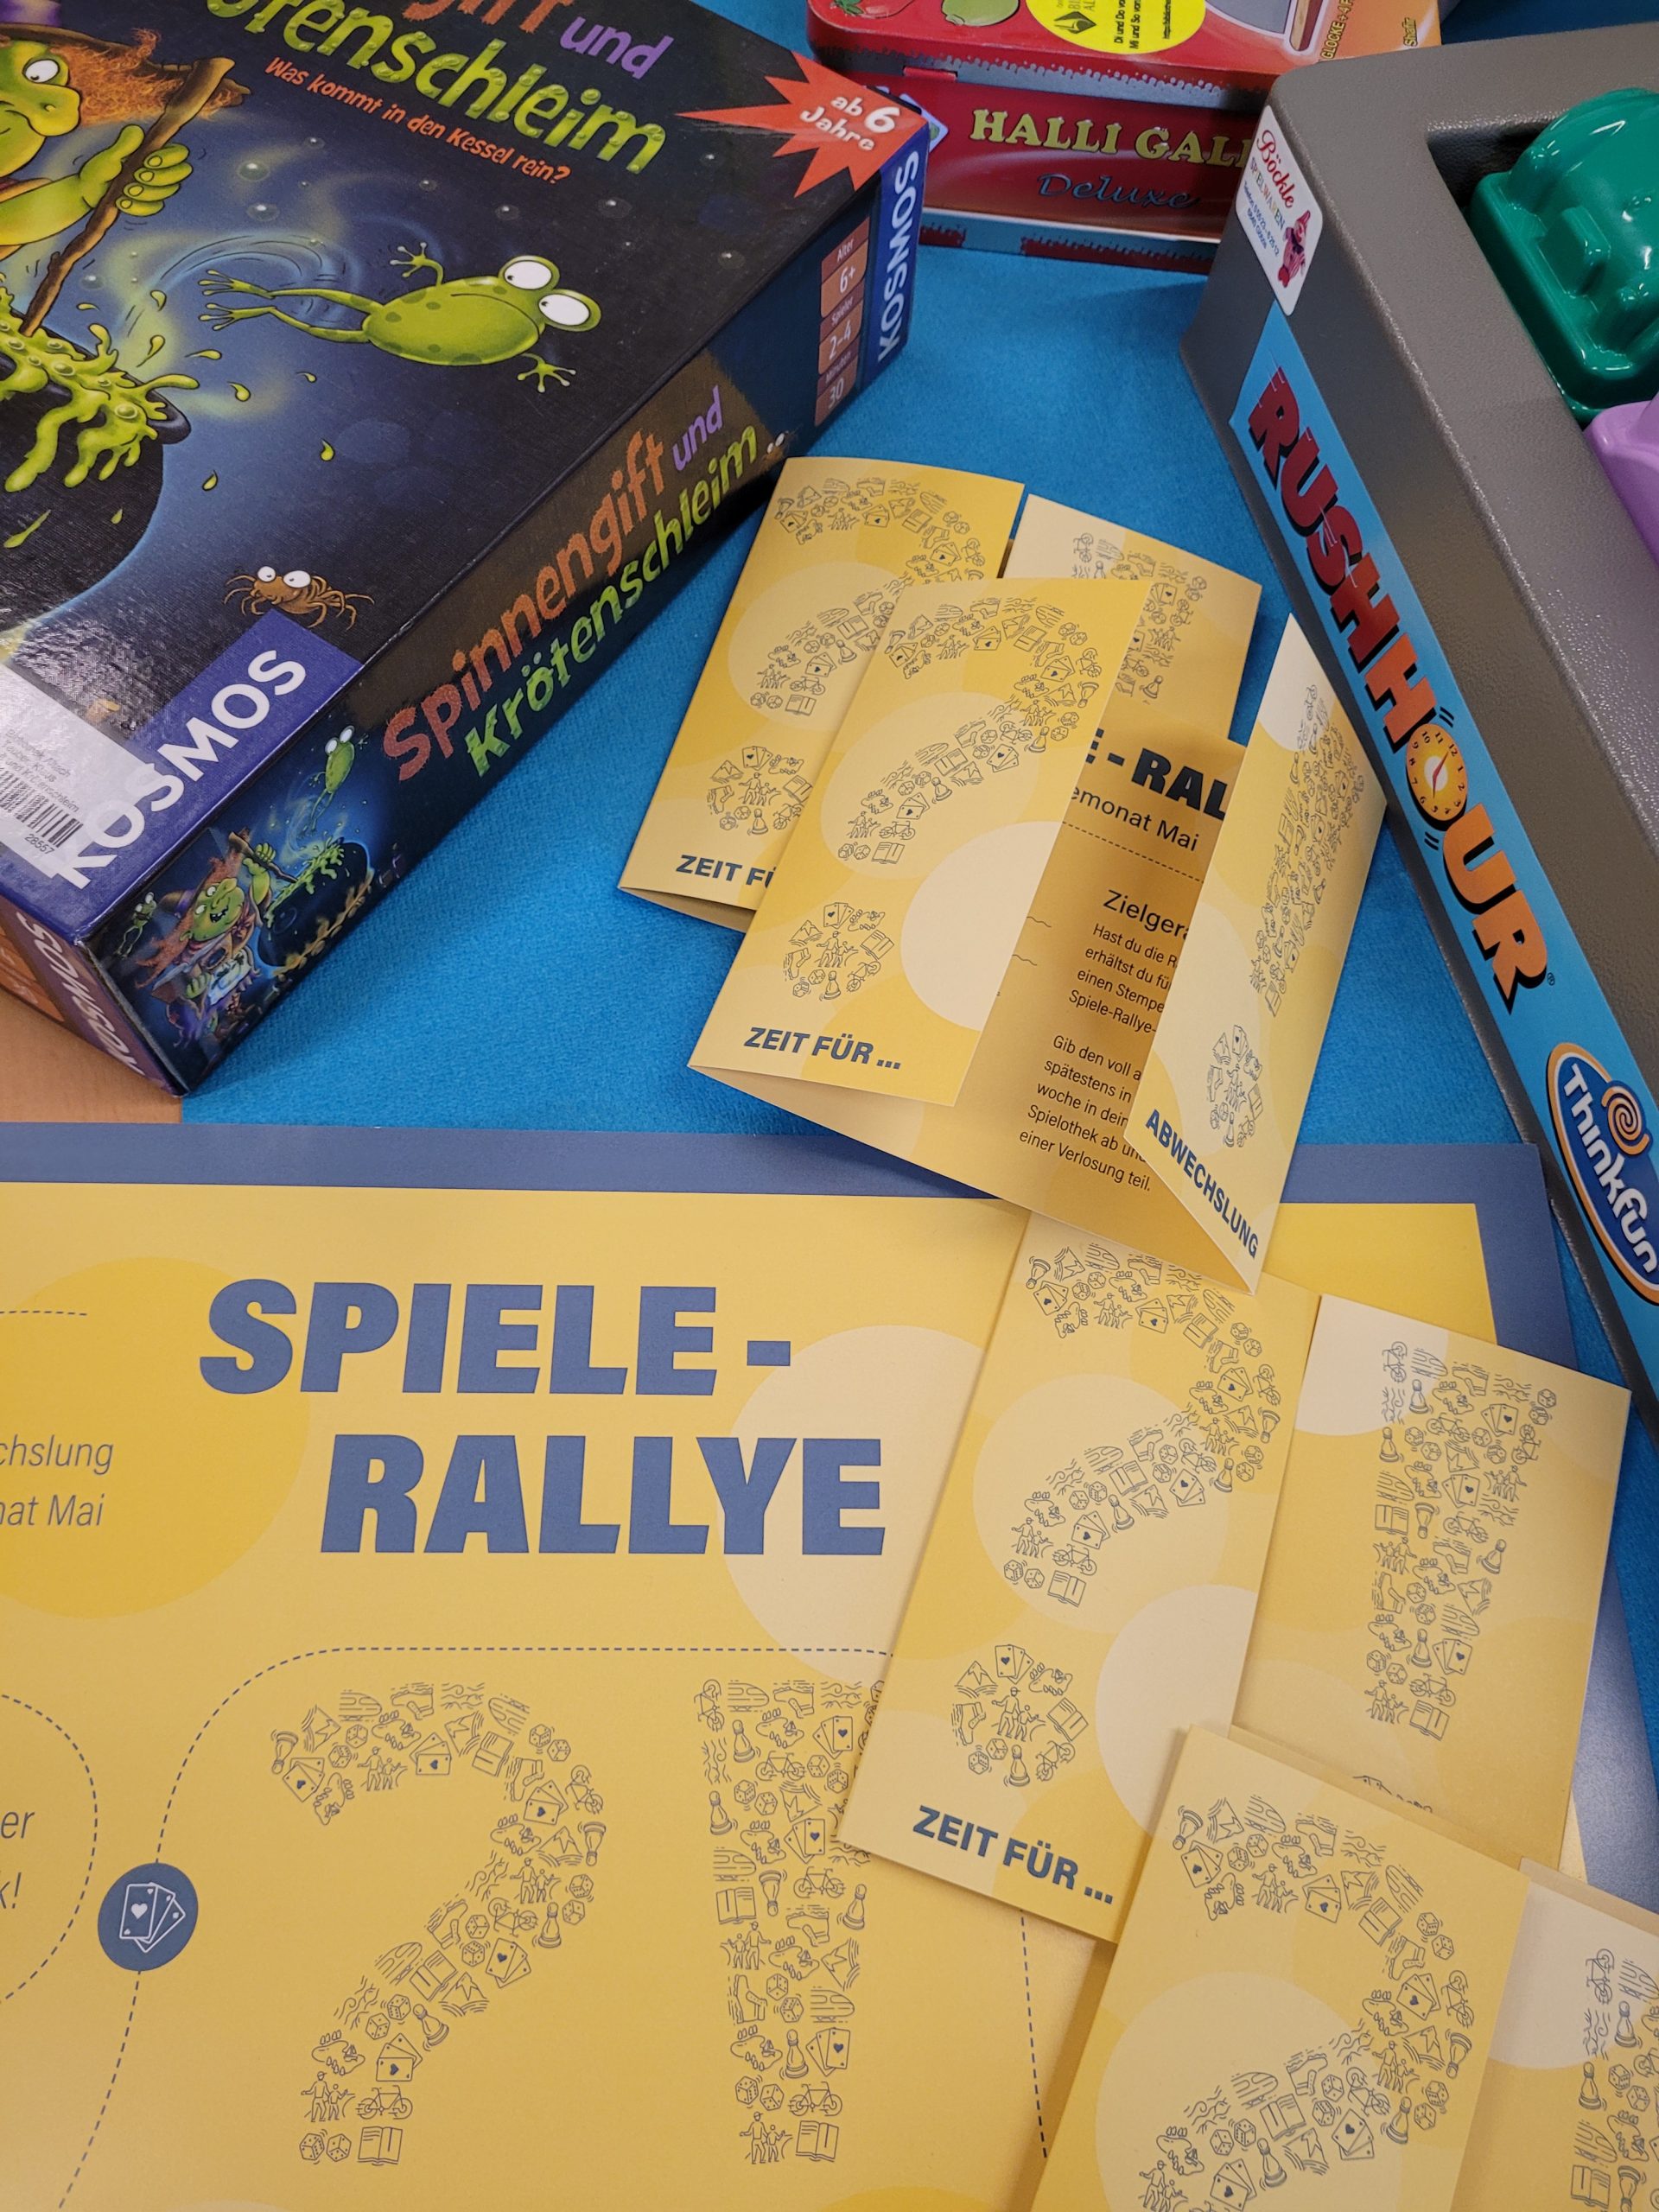 Spiele-Rallye